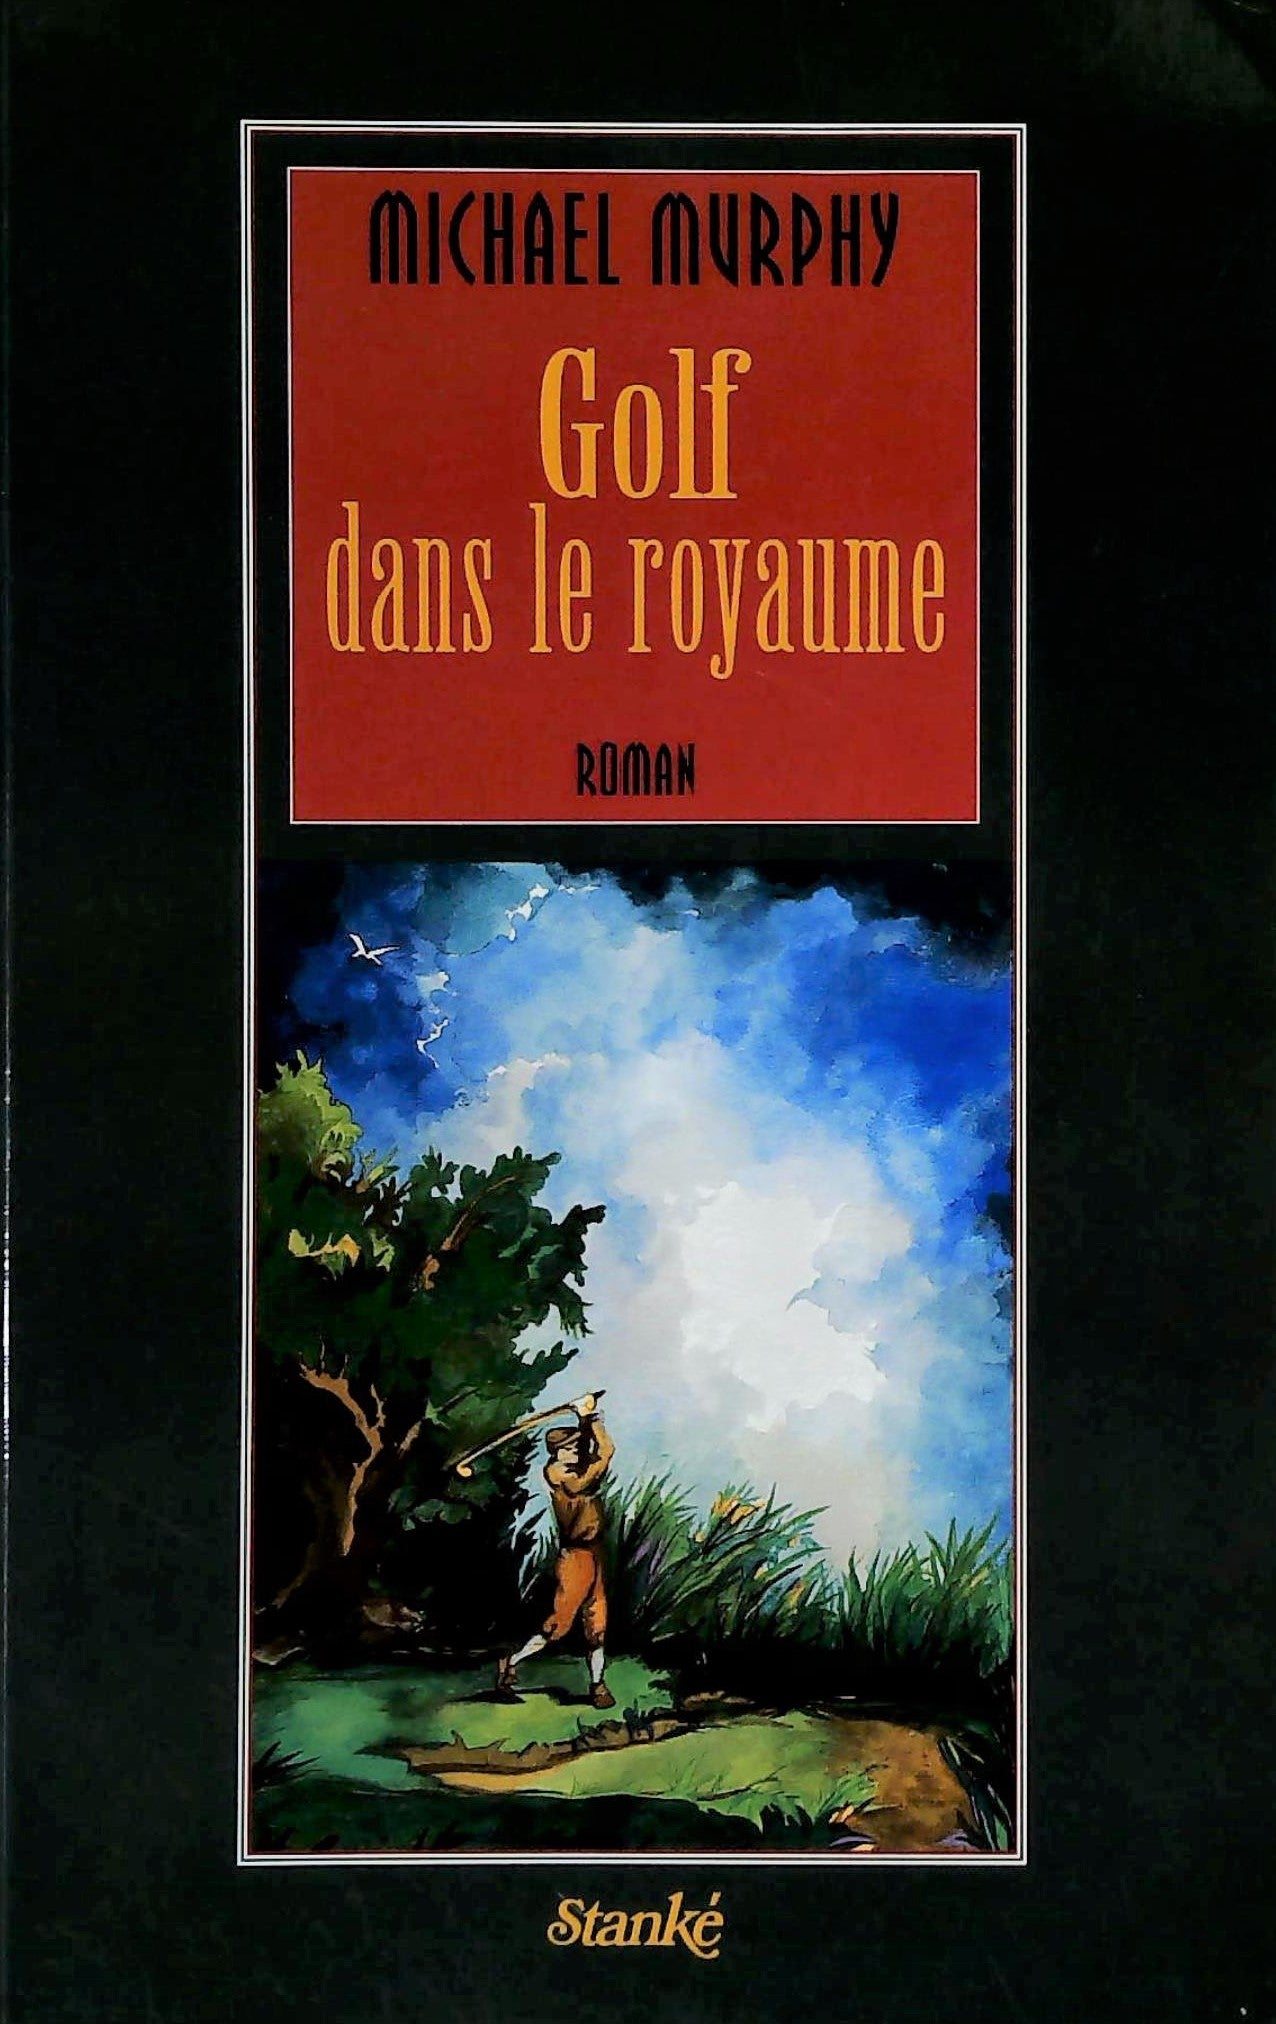 Livre ISBN 2760404617 Golf dans le royaume (Michael Murphy)